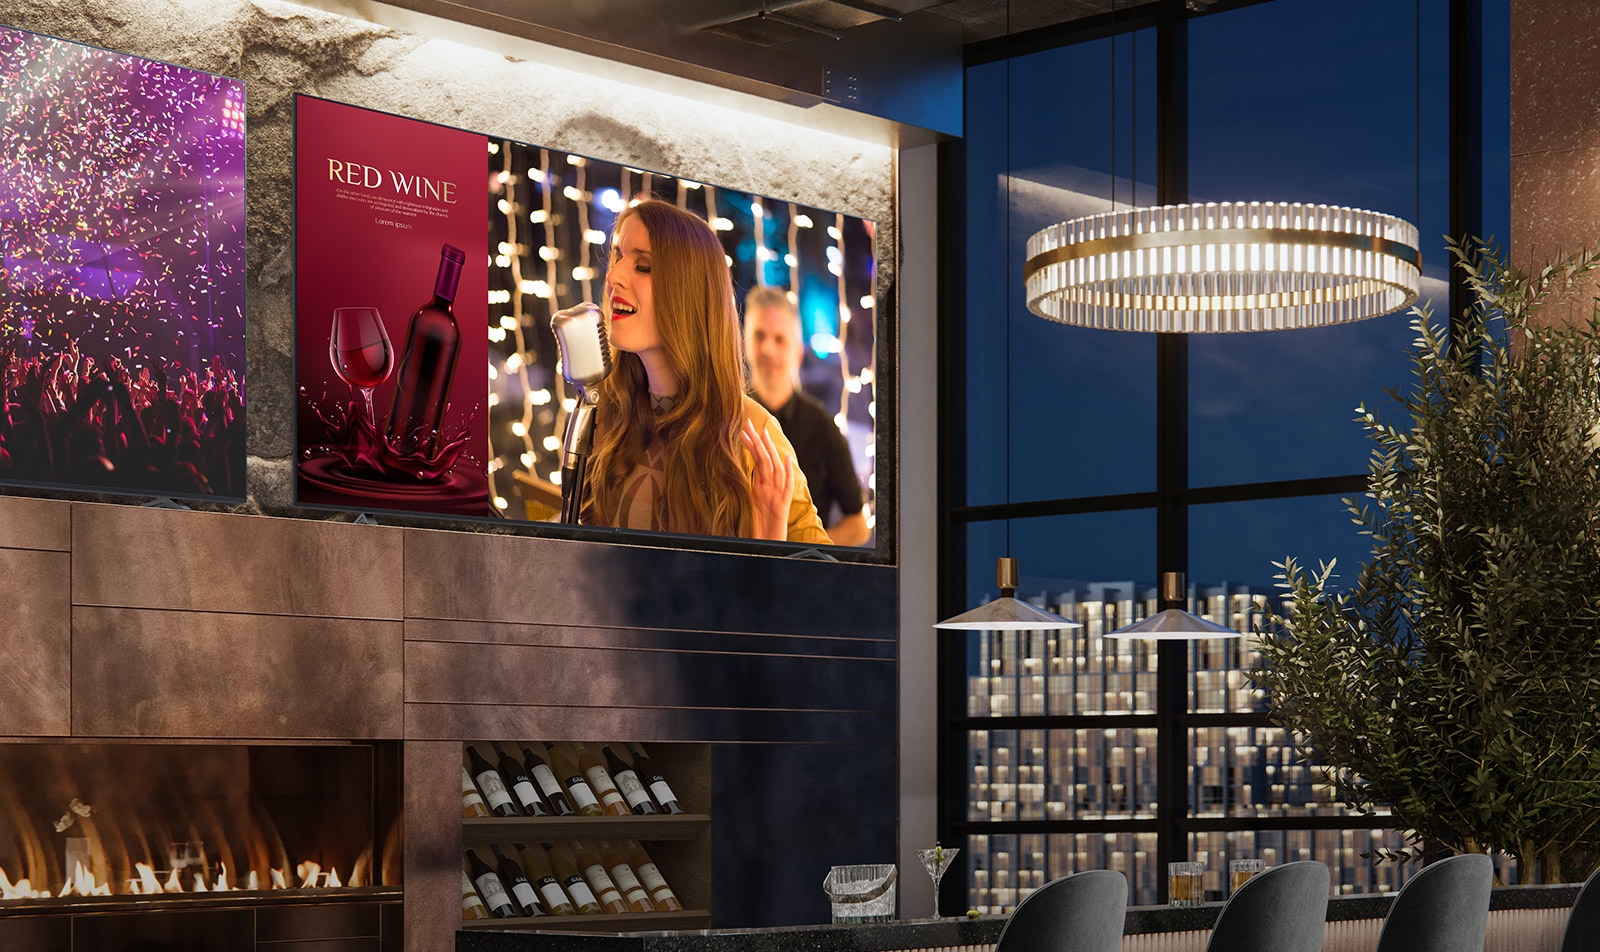 Показано два дисплея, установленных в люксовом винном баре. На одном из них показана сцена концерта, а на втором —два изображения на одном экране (коммерческая реклама винного бара в красных оттенках и женщина, исполняющая песню).